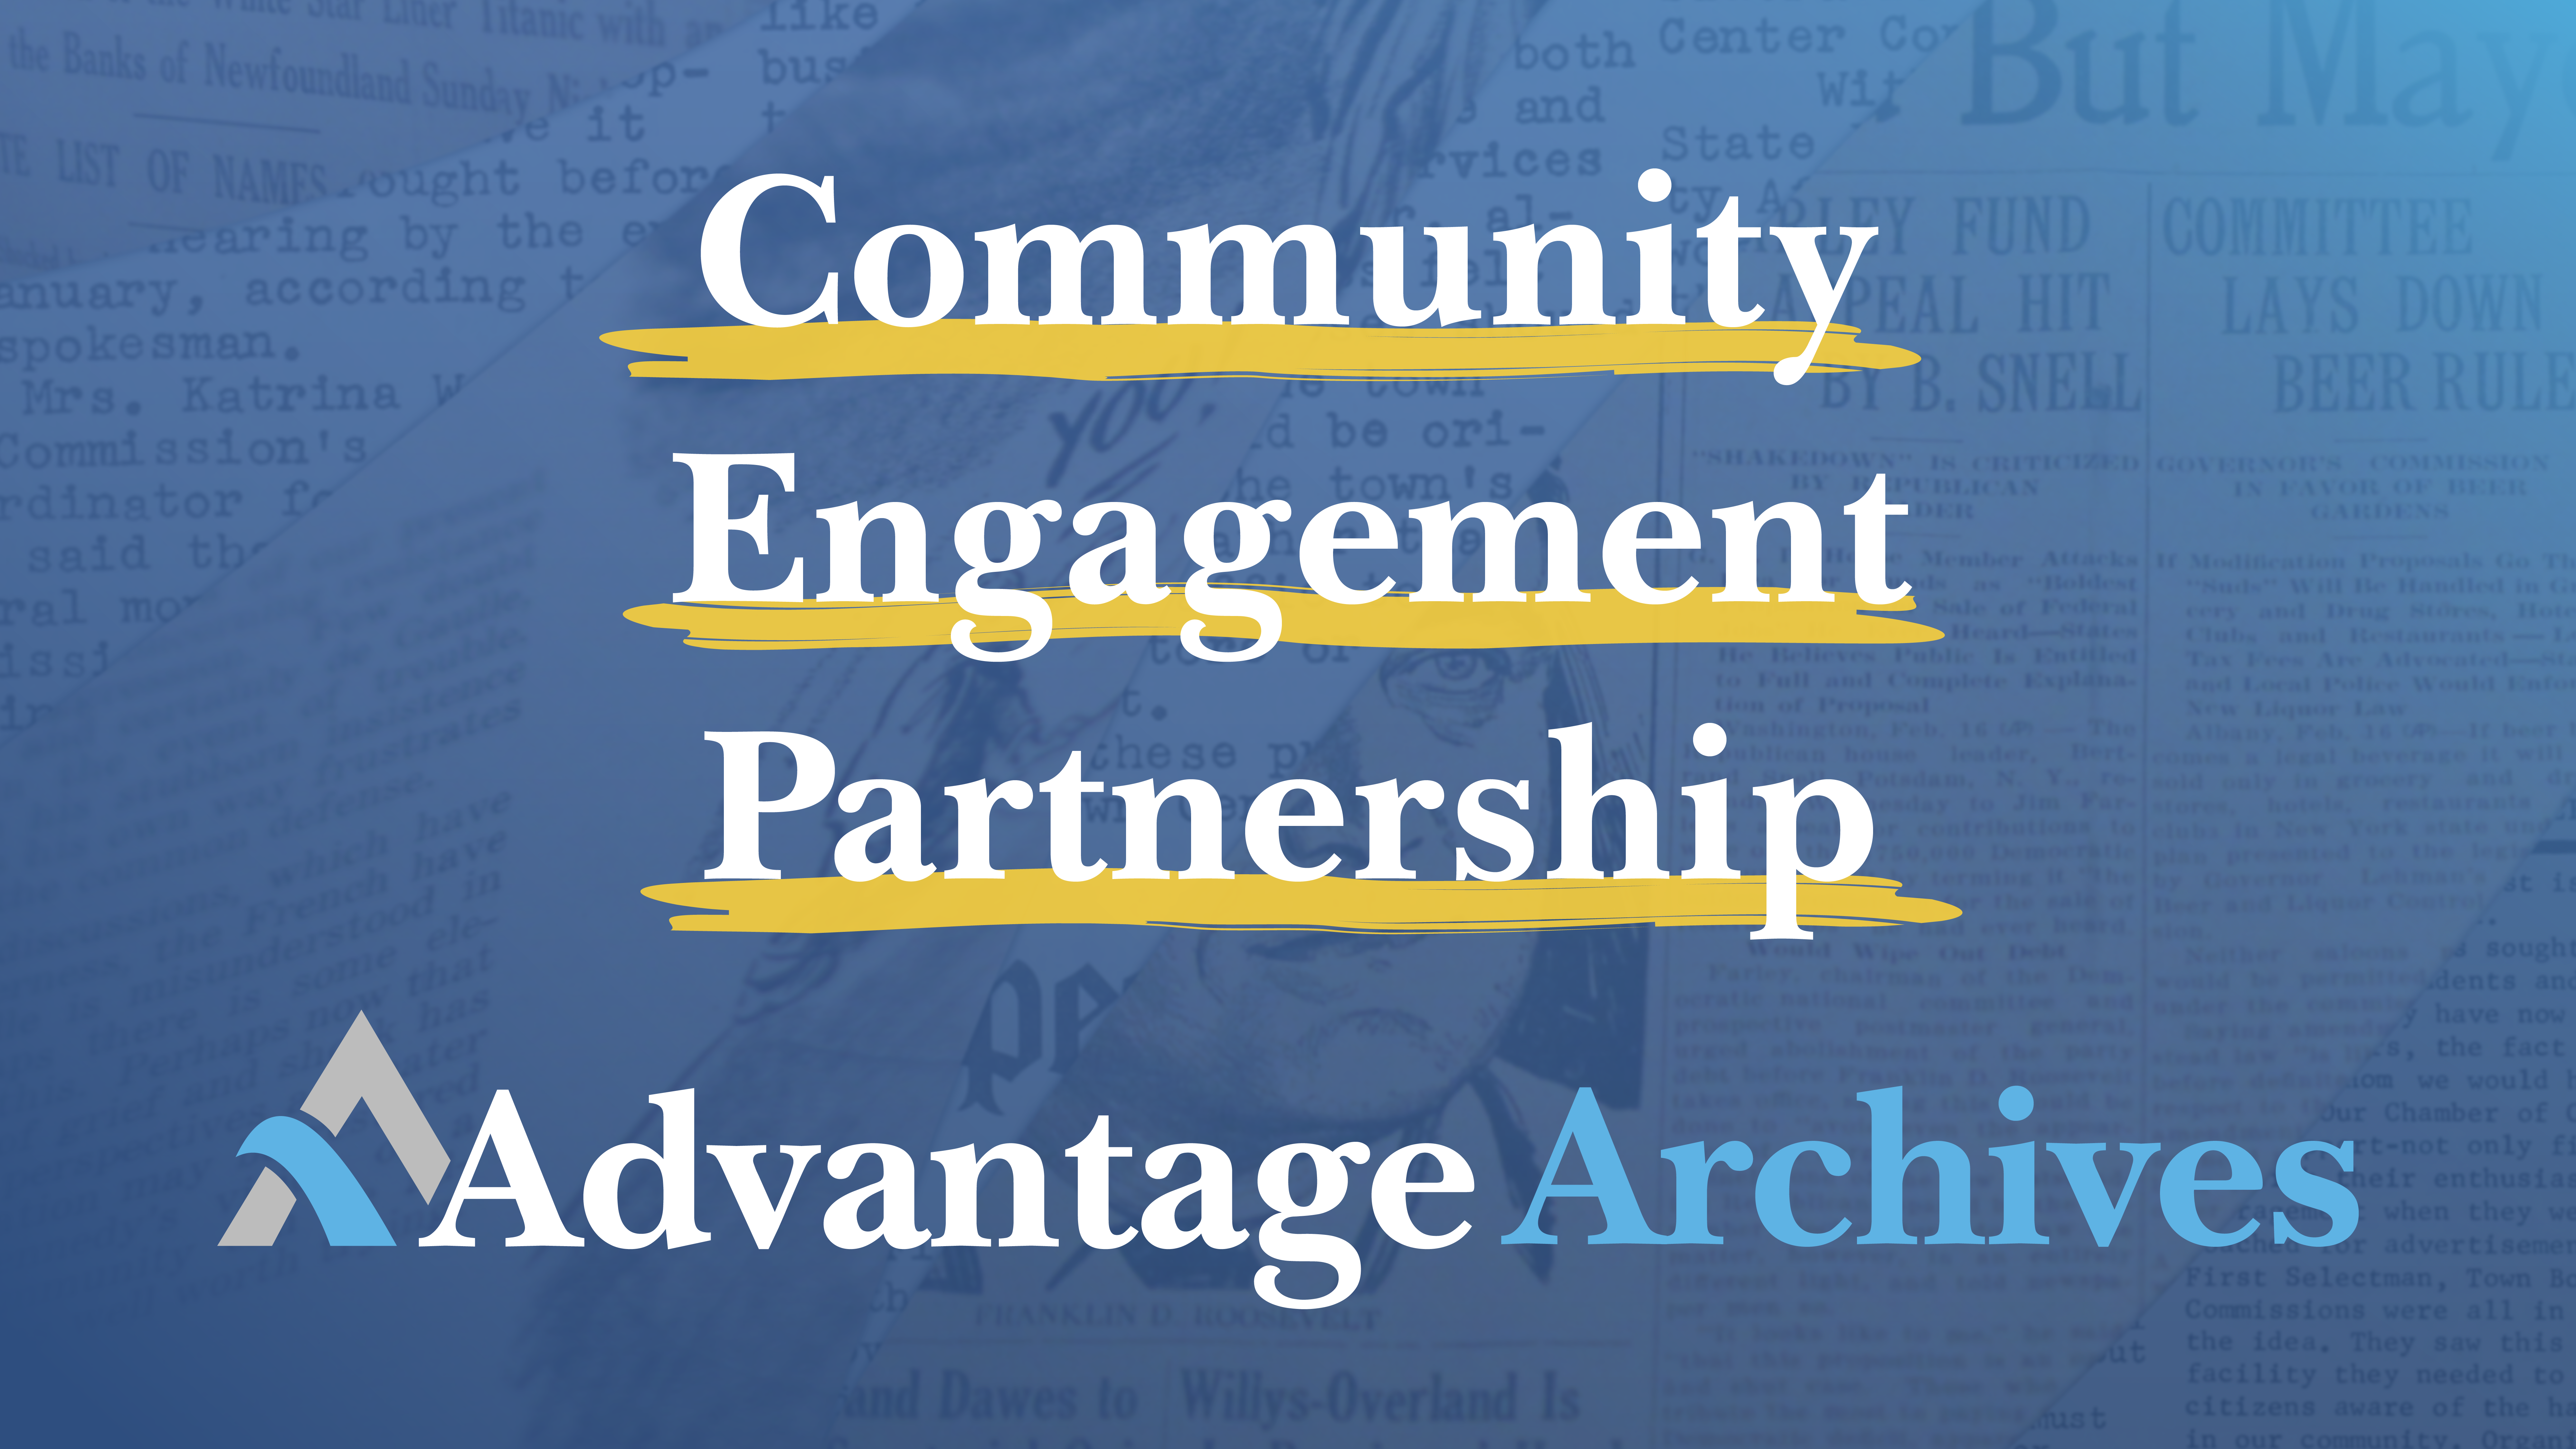 Advantage Archives core values: Community, Engagement, Partnership